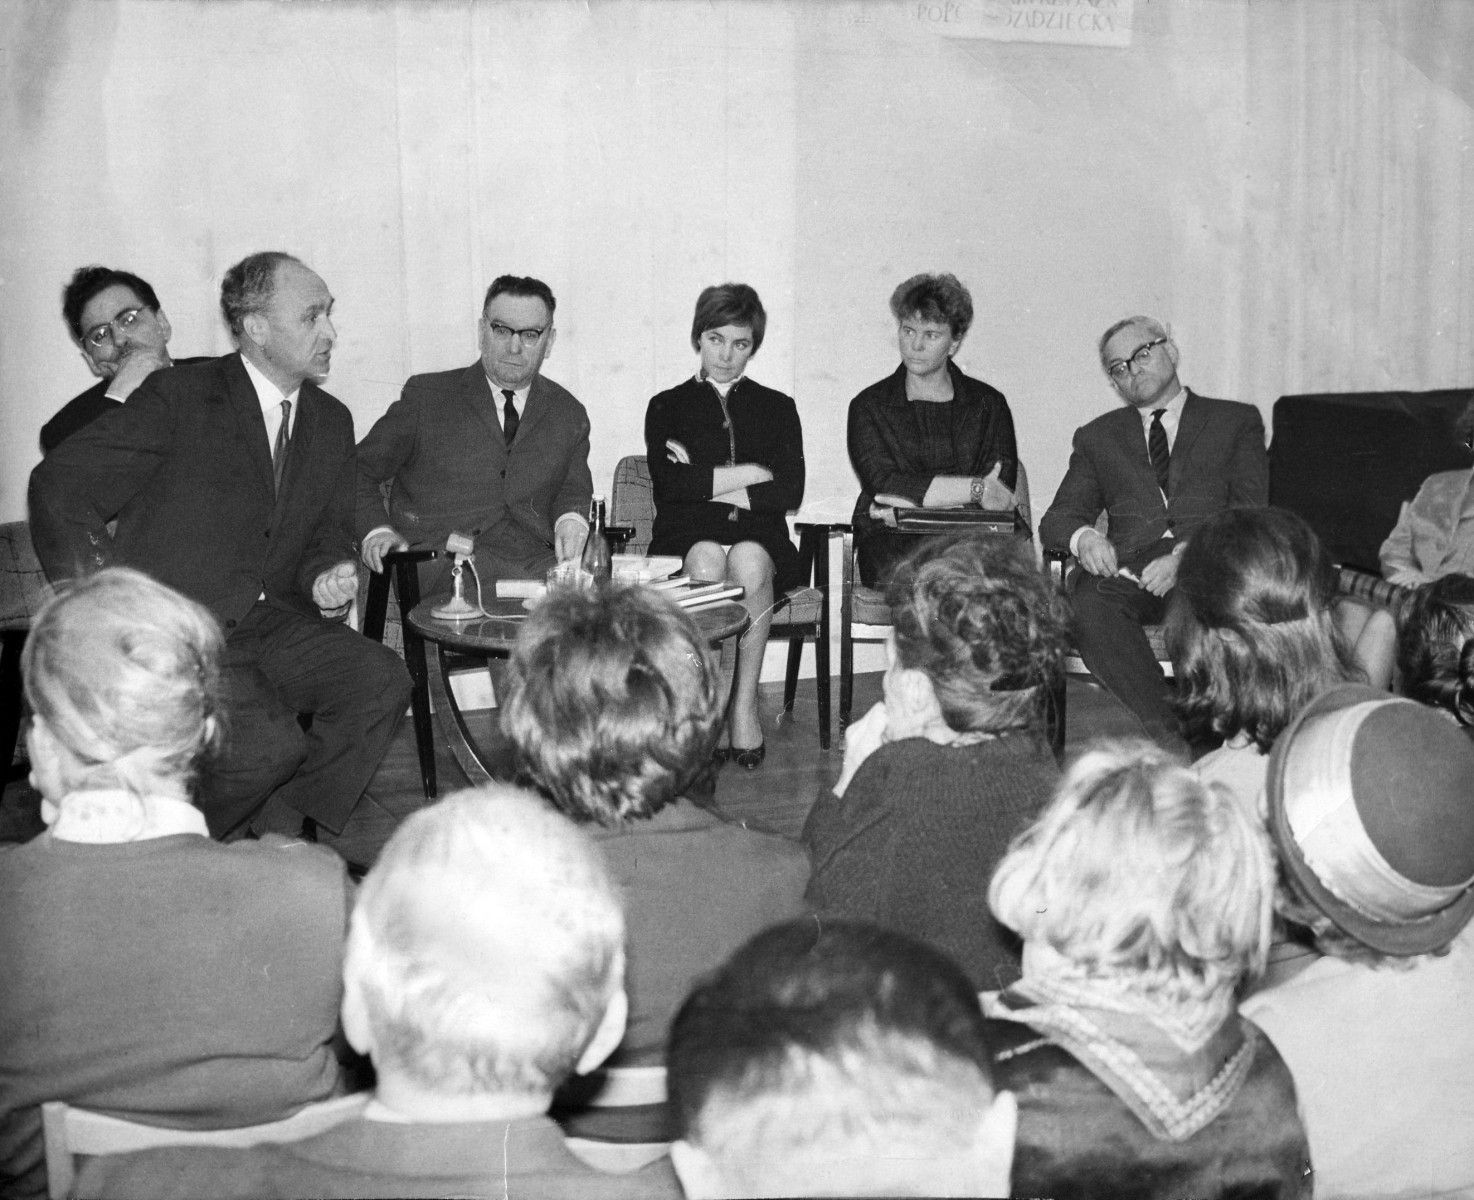 Режиссер Дина Мусатова (вторая справа на фото) на творческой встрече с польскими кинематографистами в Варшаве. Источник фото: #МузейЦСДФ.